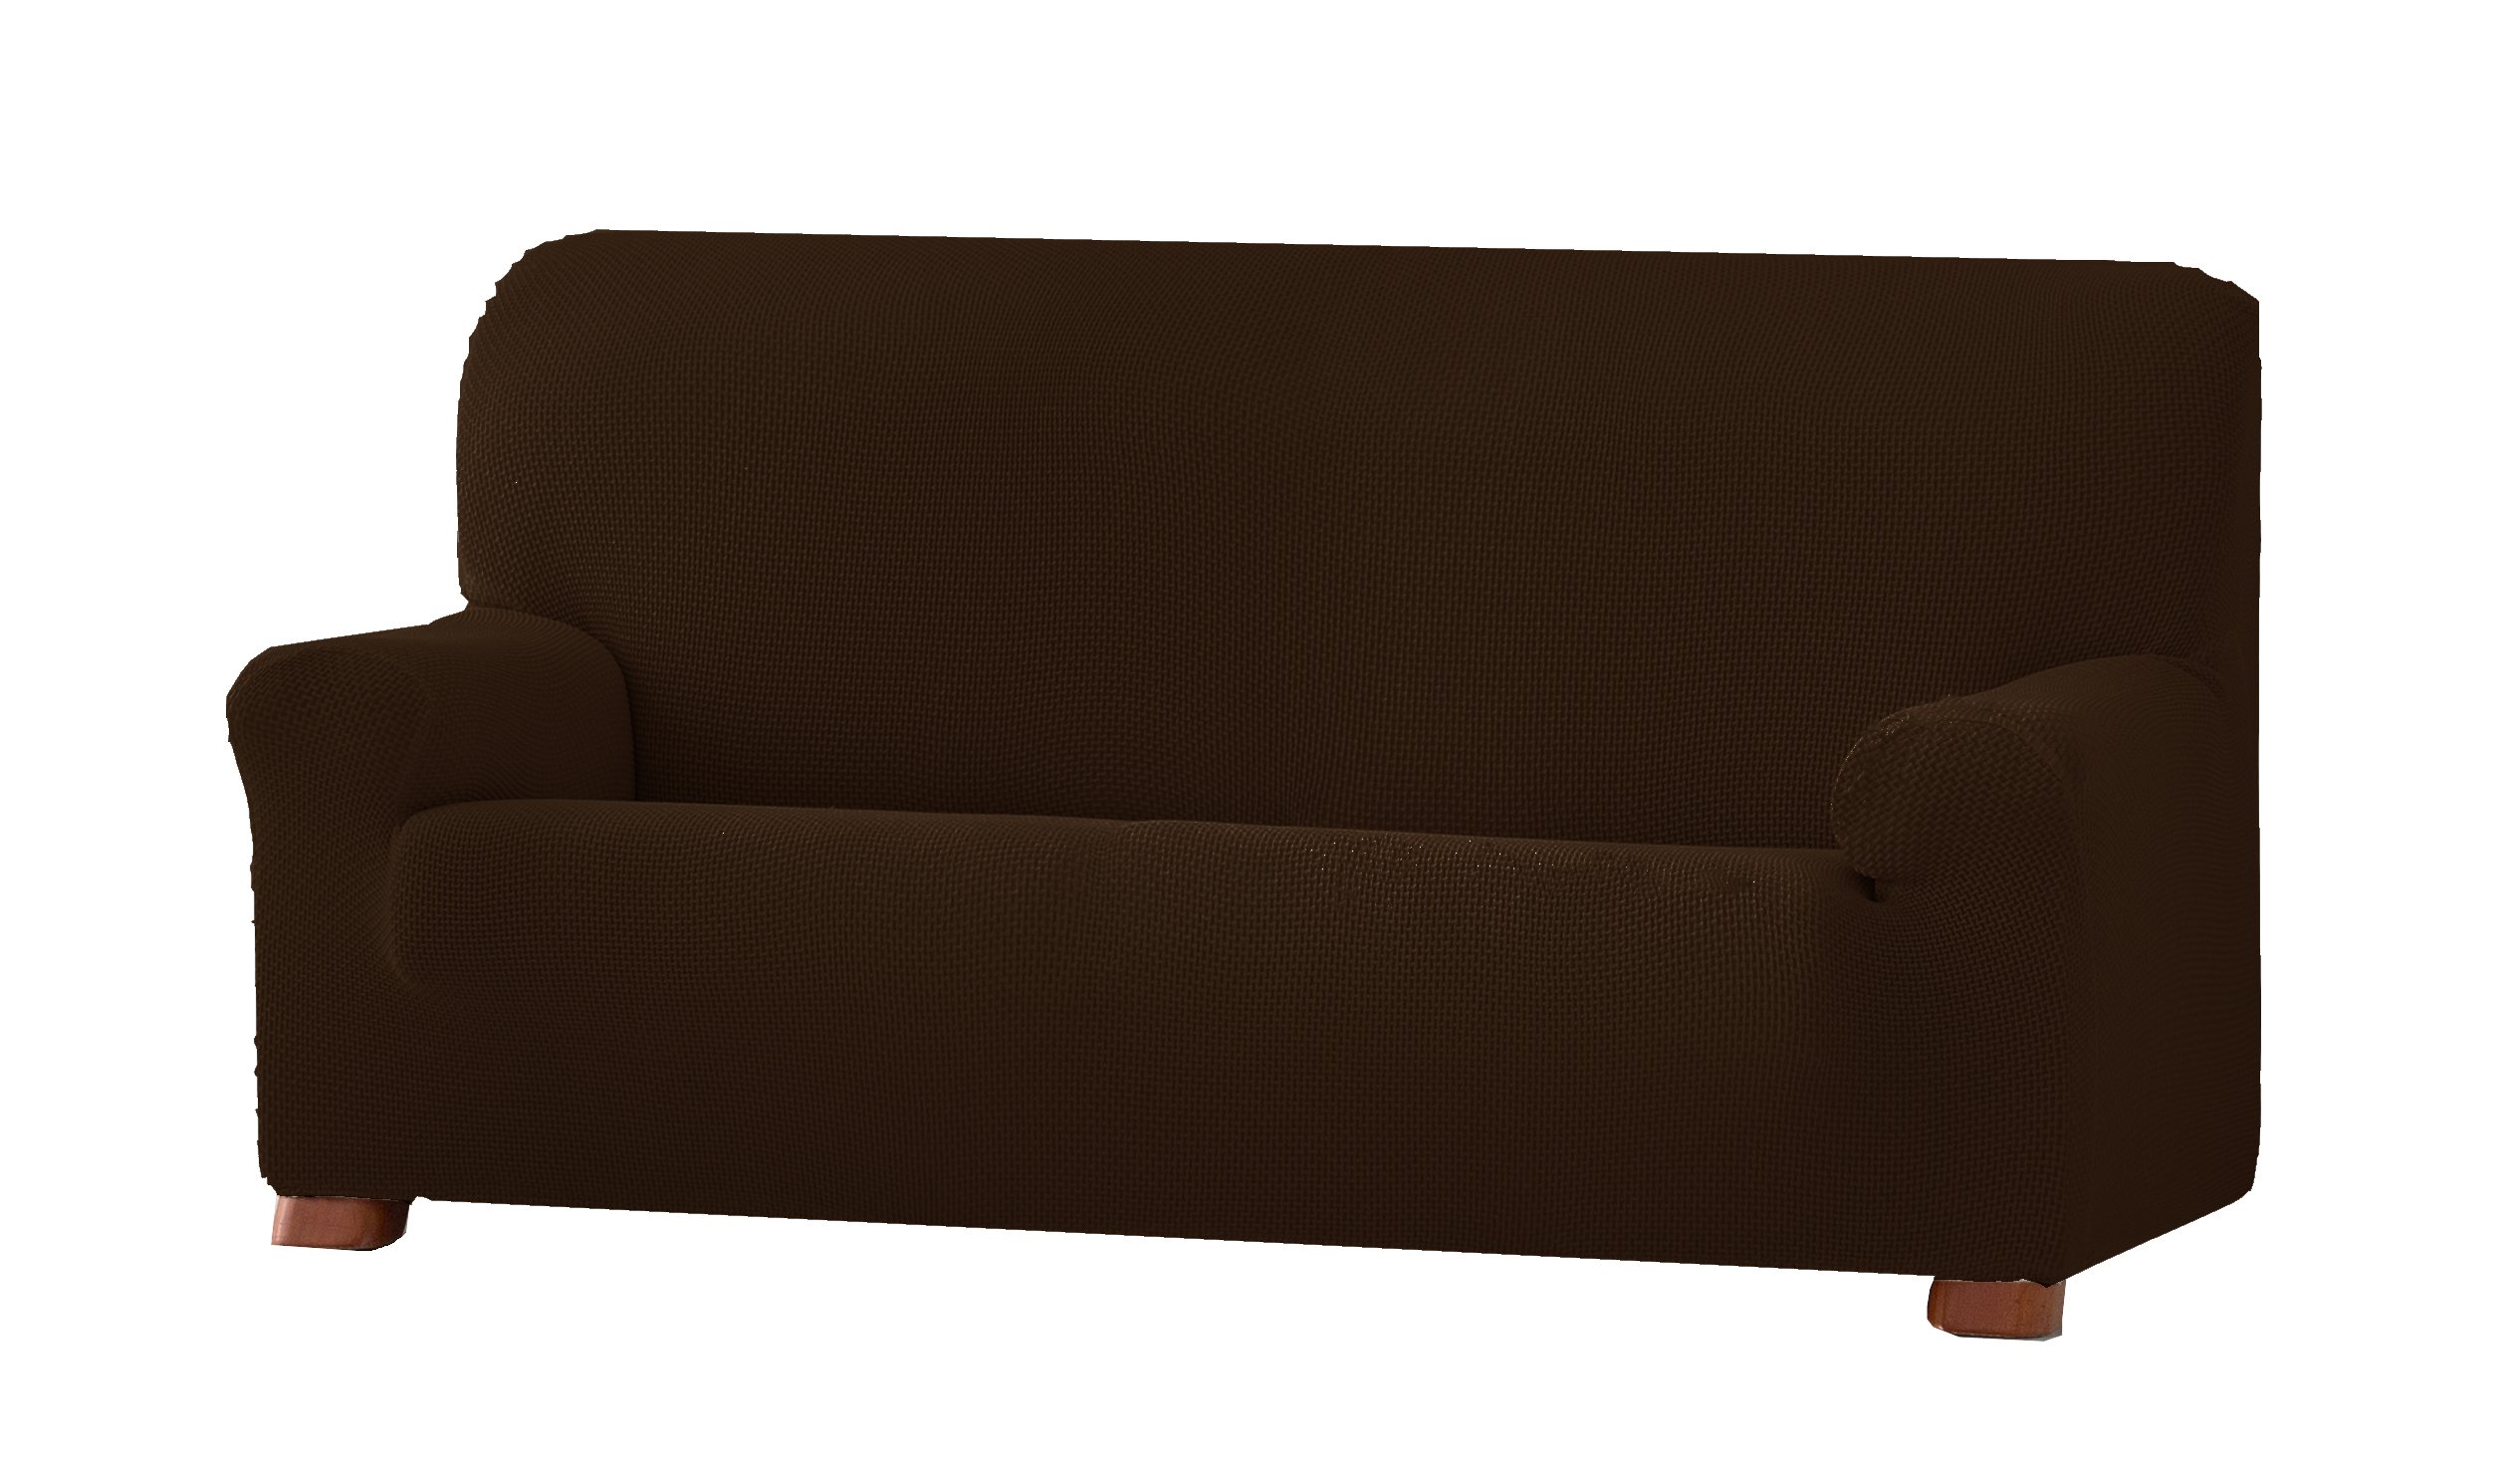 Eysa Cora bielastisch Sofa überwurf 3 sitzer Farbe 07-braun, Polyester-Baumwolle, 36 x 27 x 17 cm